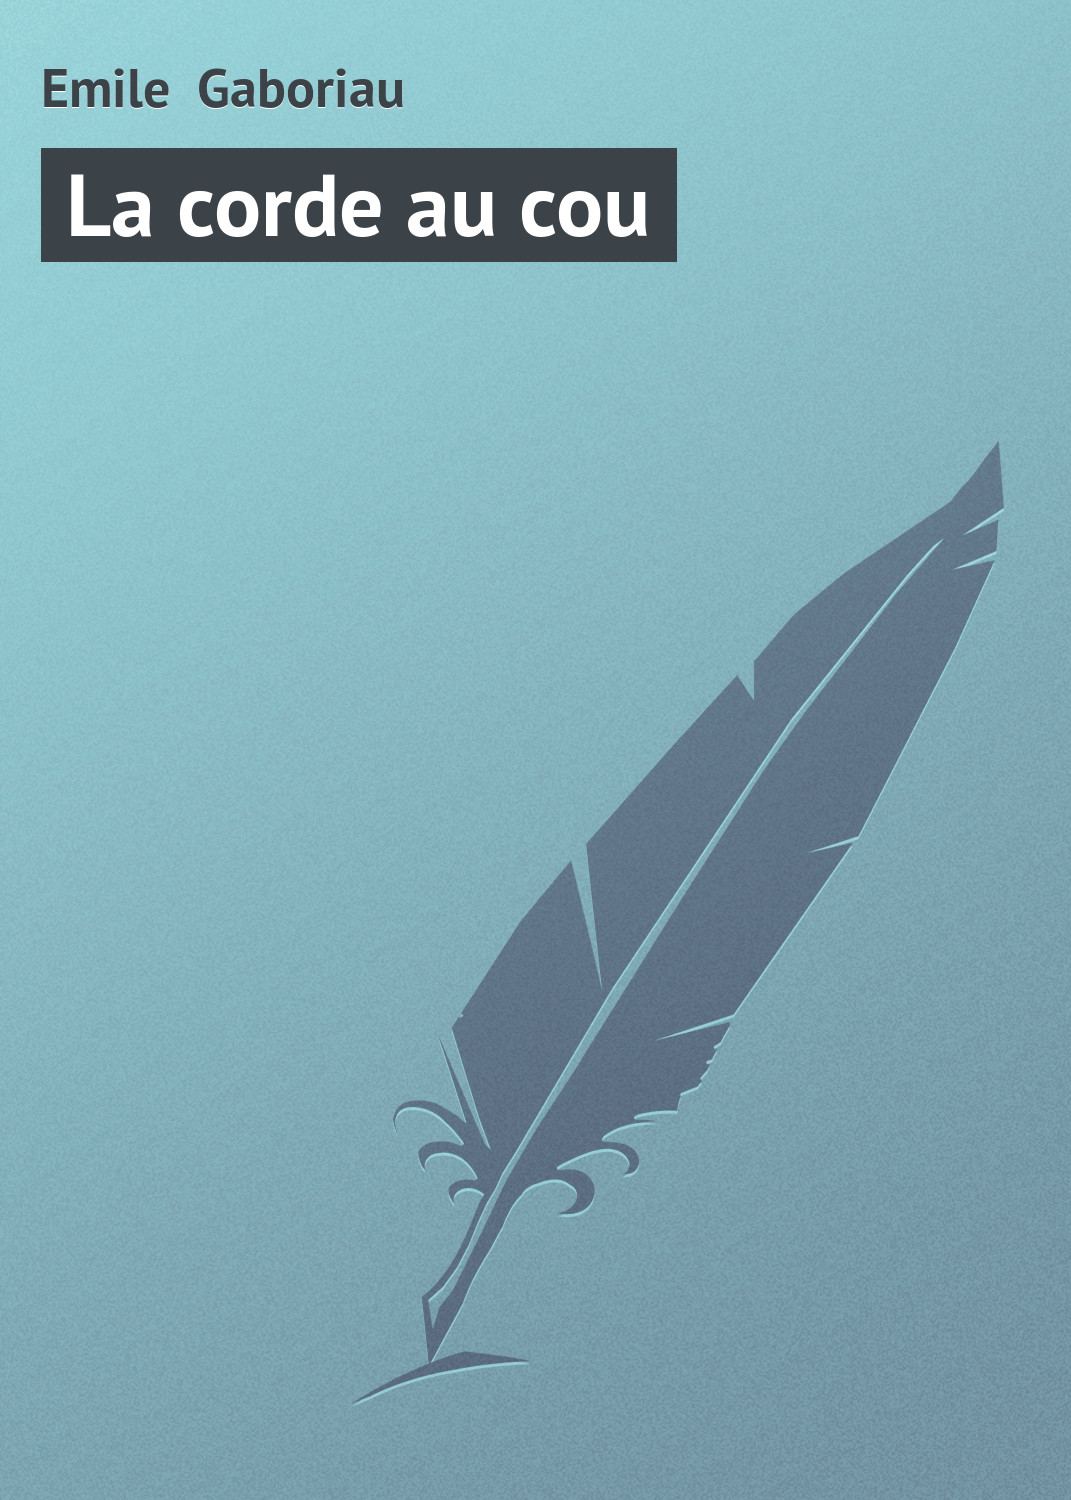 Книга La corde au cou из серии , созданная Emile Gaboriau, может относится к жанру Зарубежная старинная литература, Зарубежная классика. Стоимость электронной книги La corde au cou с идентификатором 21105926 составляет 5.99 руб.